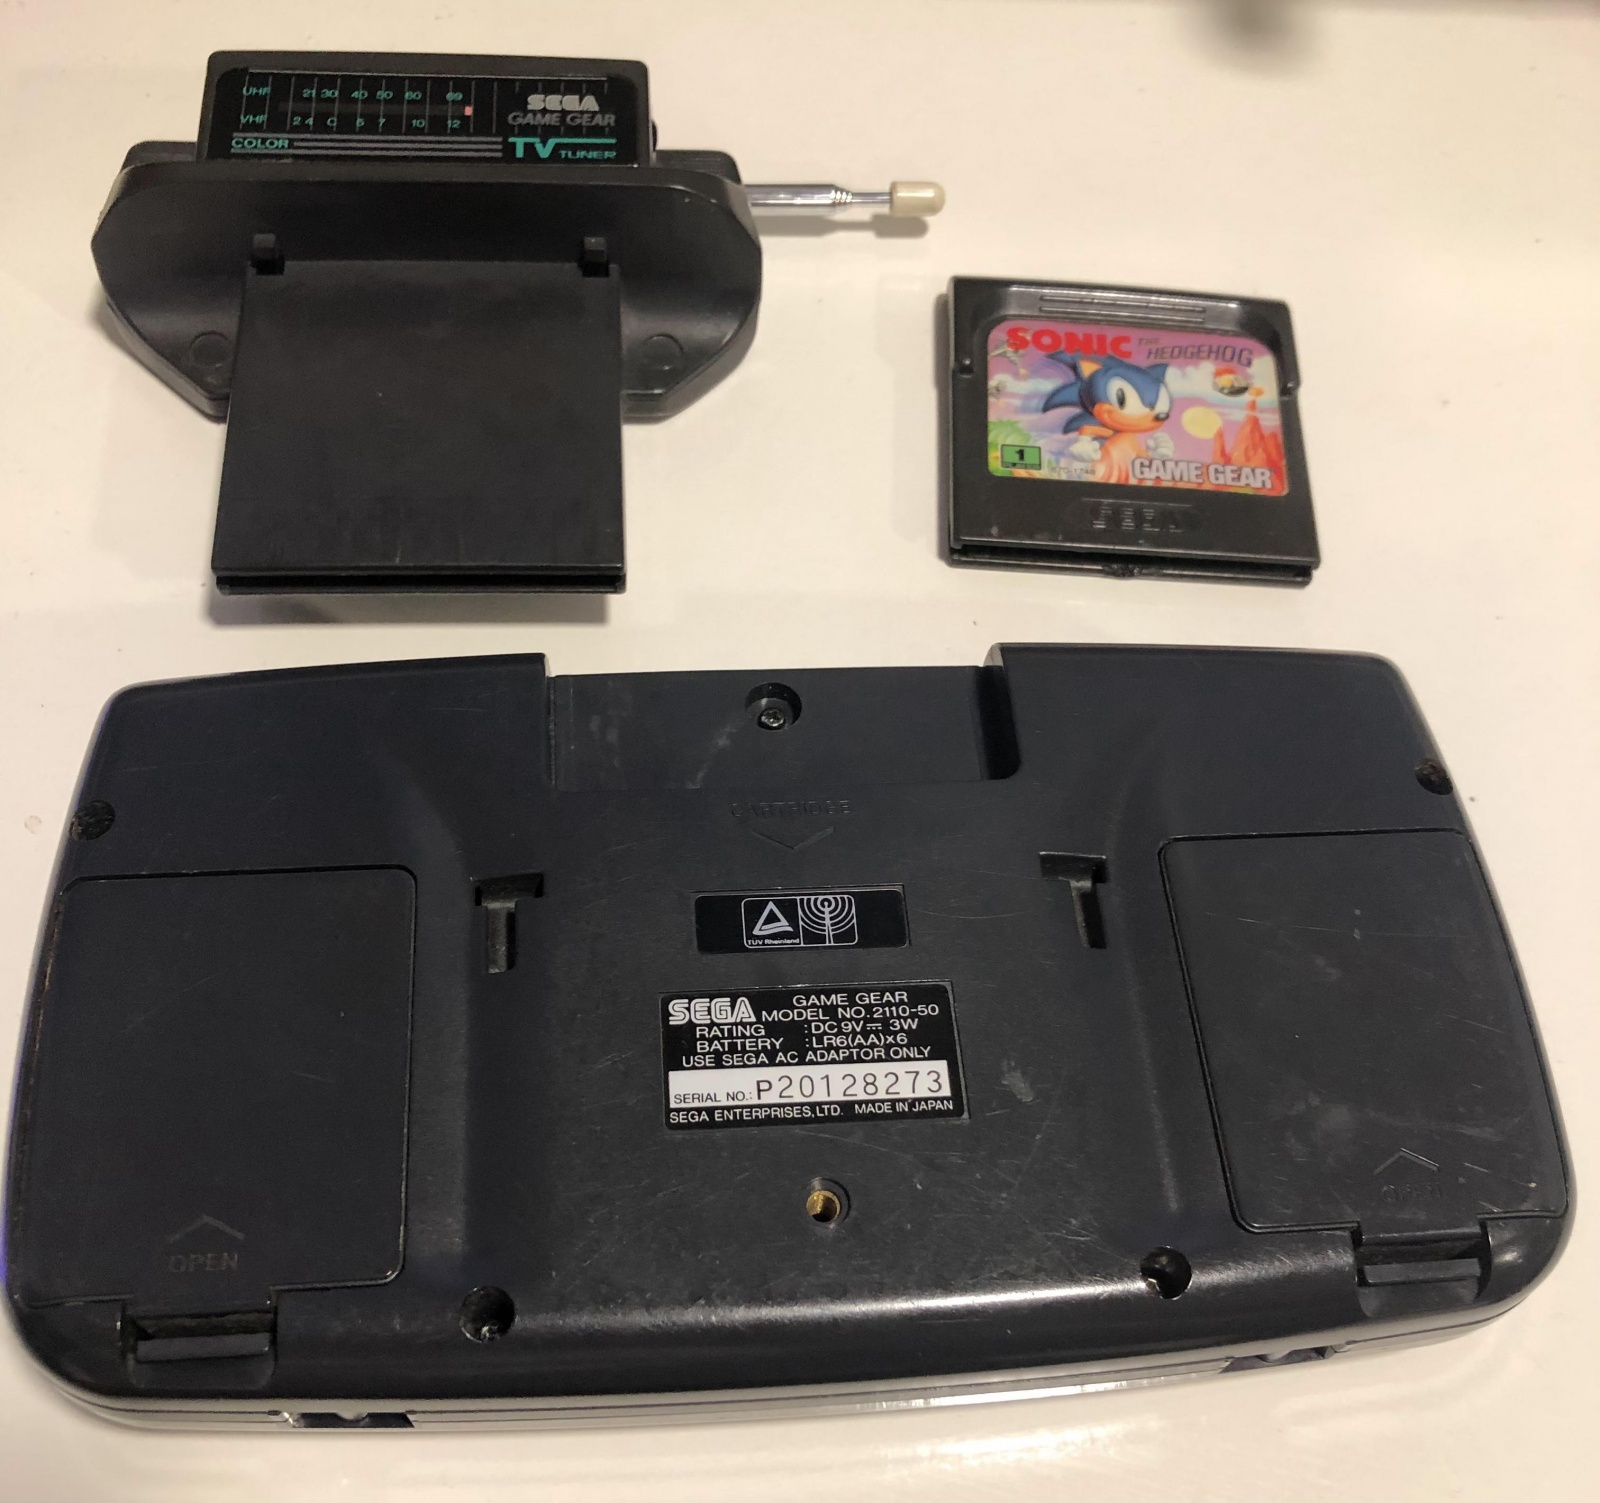 Sega Game Gear: портативная игровая консоль 90-х. Как электронный мусор превратить в работающий девайс - 3